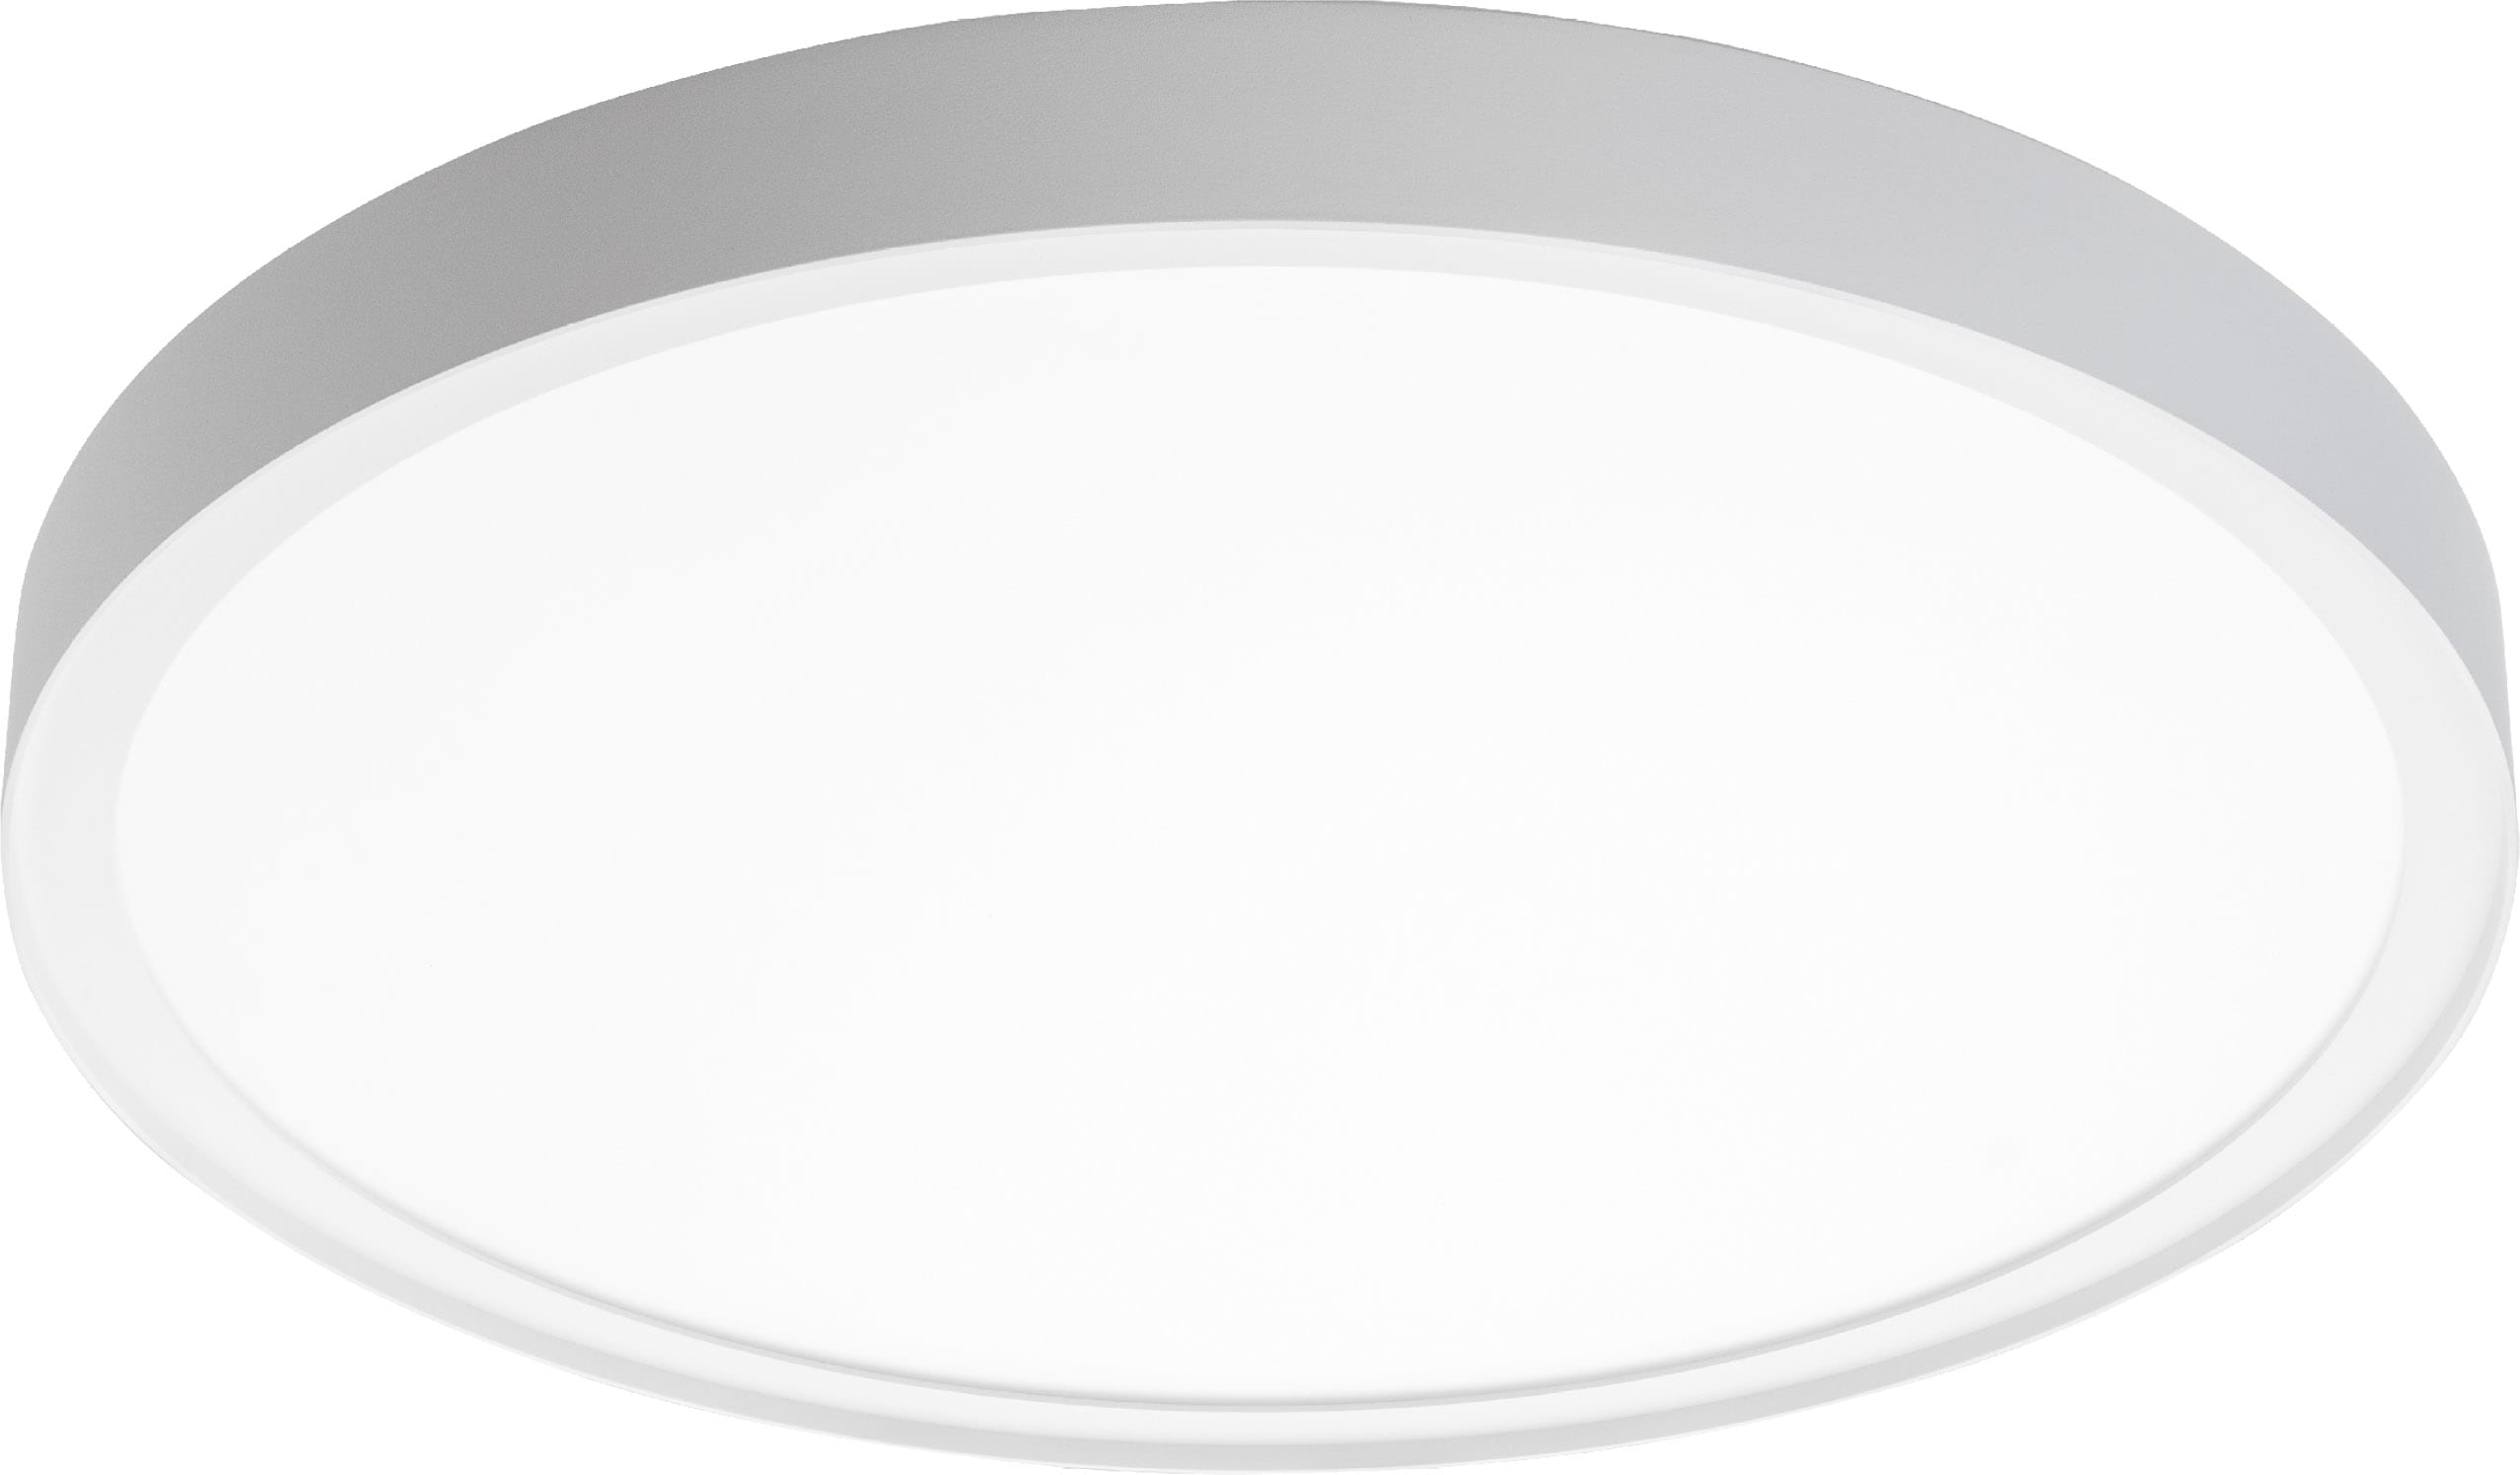 SG Lighting - Disc 480 luminaire en saillie blanc 3400lm 2700K Ra>80 coupure de phase